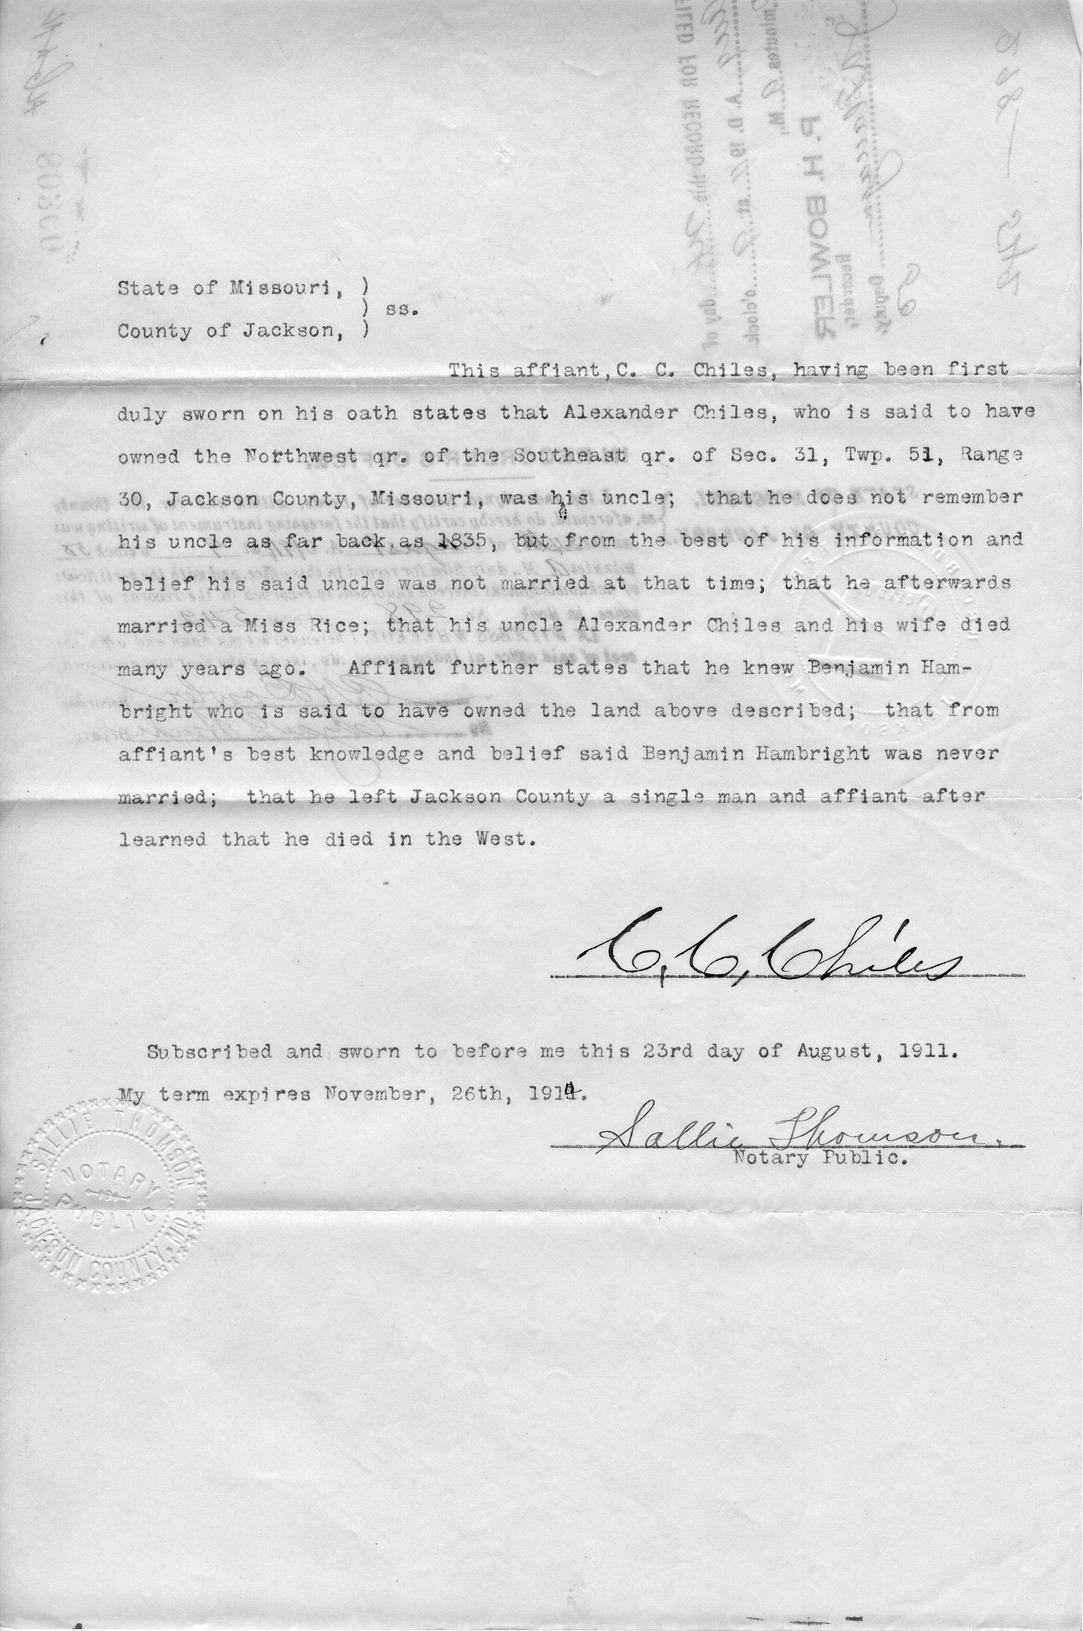 Affidavit of C. C. Chiles